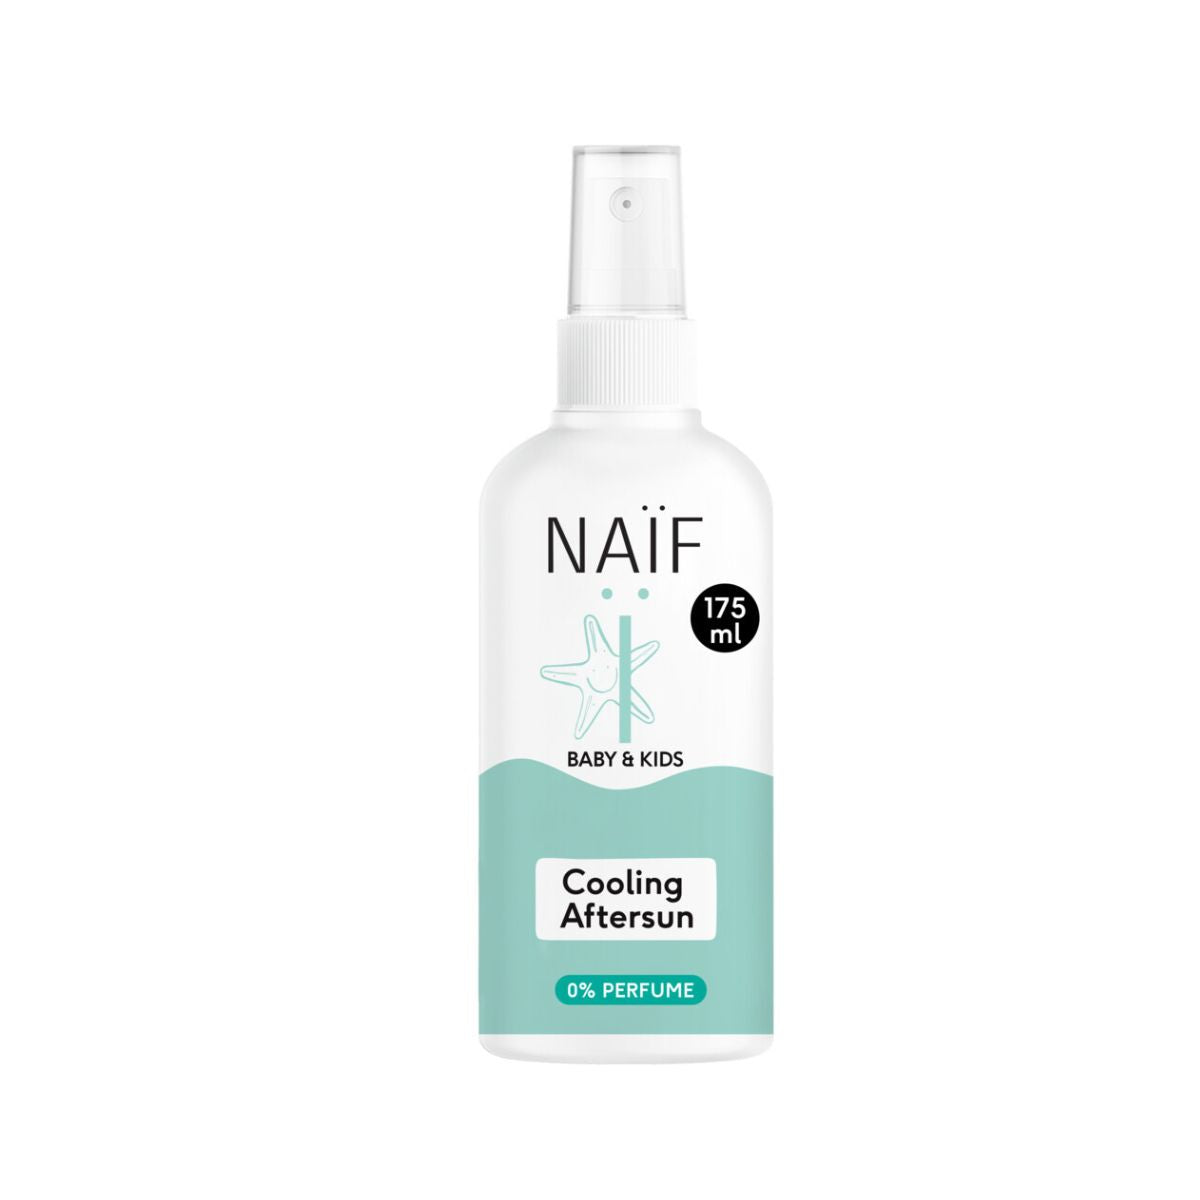 Na een dag zon gebruik je de verkoelende aftersun spray van Naïf. De aftersun is parfum vrij geschikt voor baby’s en kids. Verzorgt de huid en trekt snel in. De spray plakt niet en houdt de huid soepel en zacht. VanZus